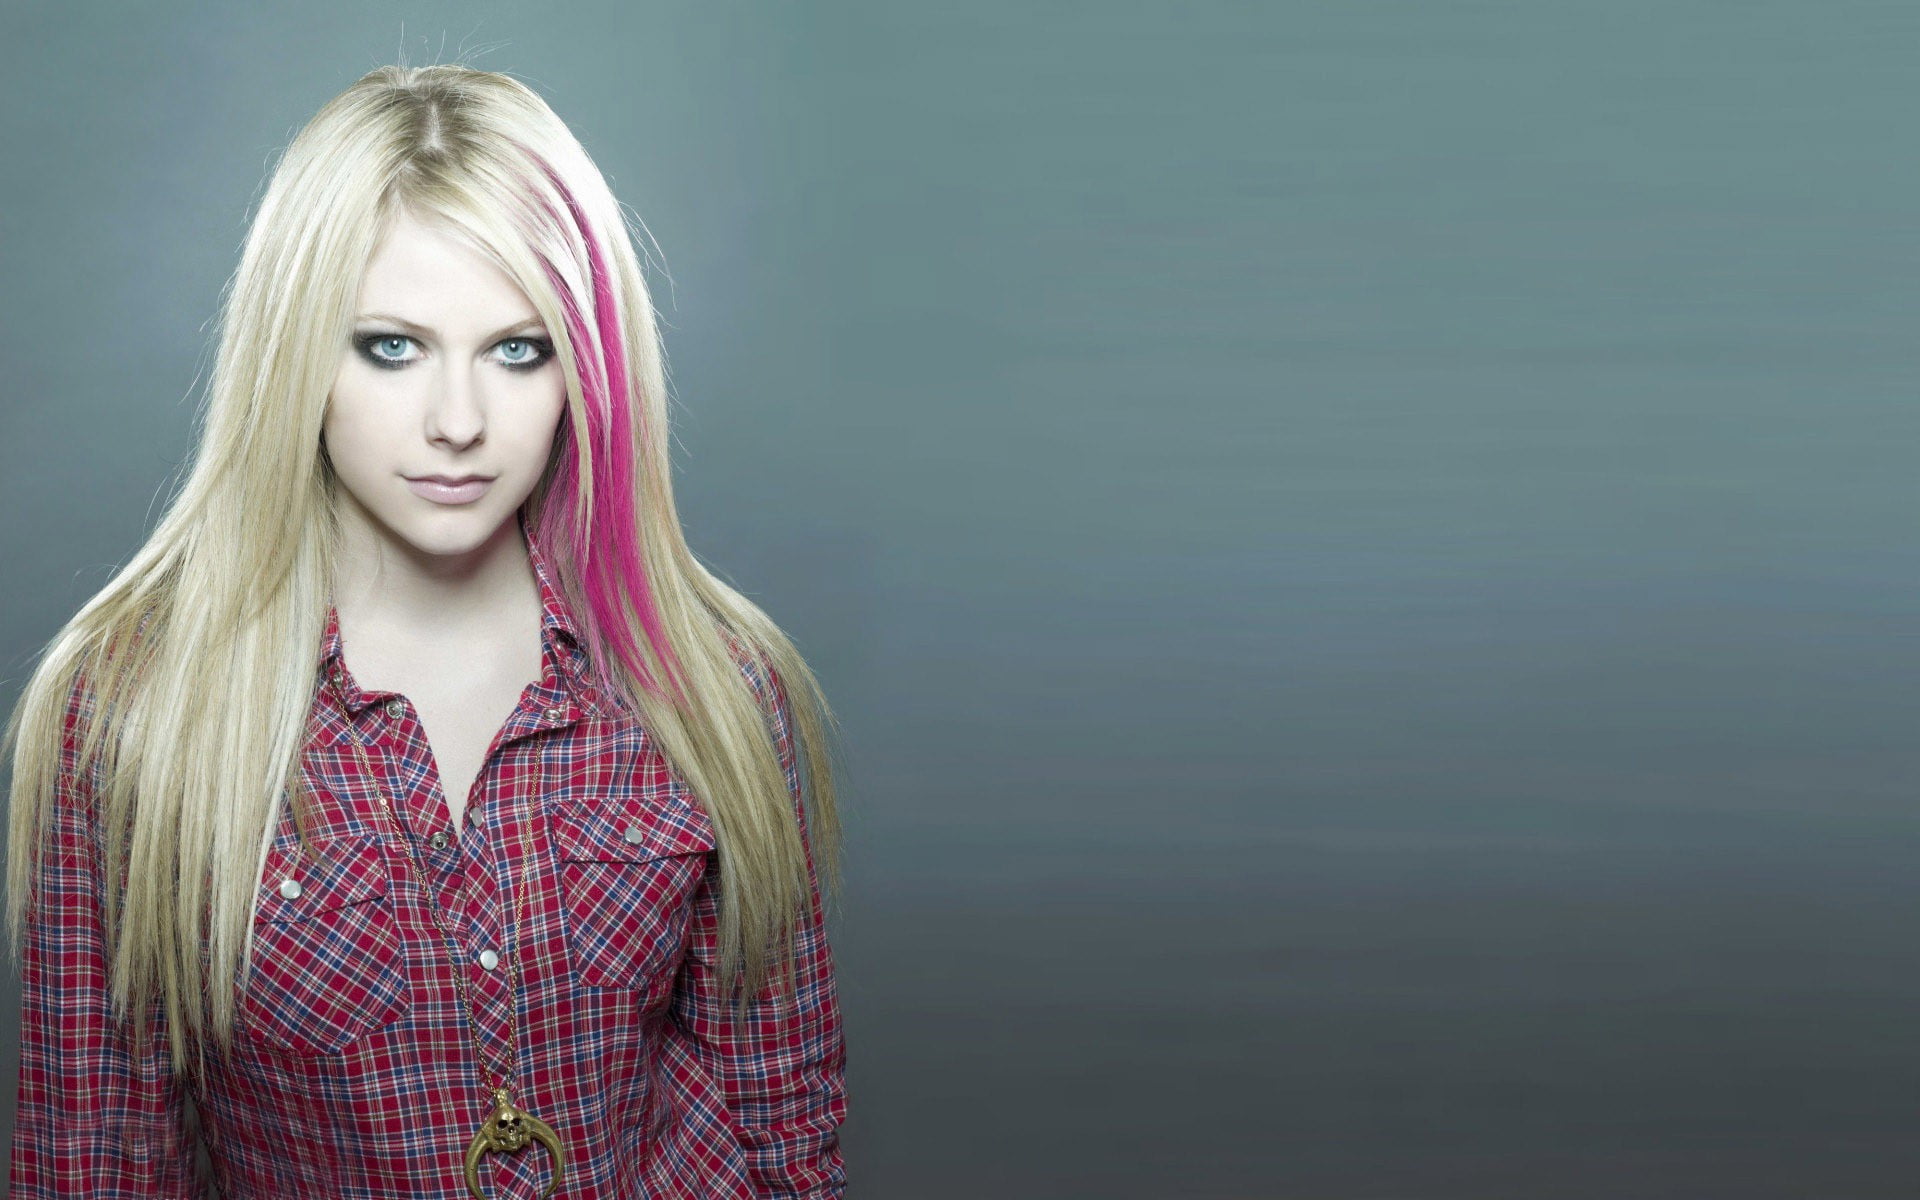 8. Avril Lavigne - wide 4